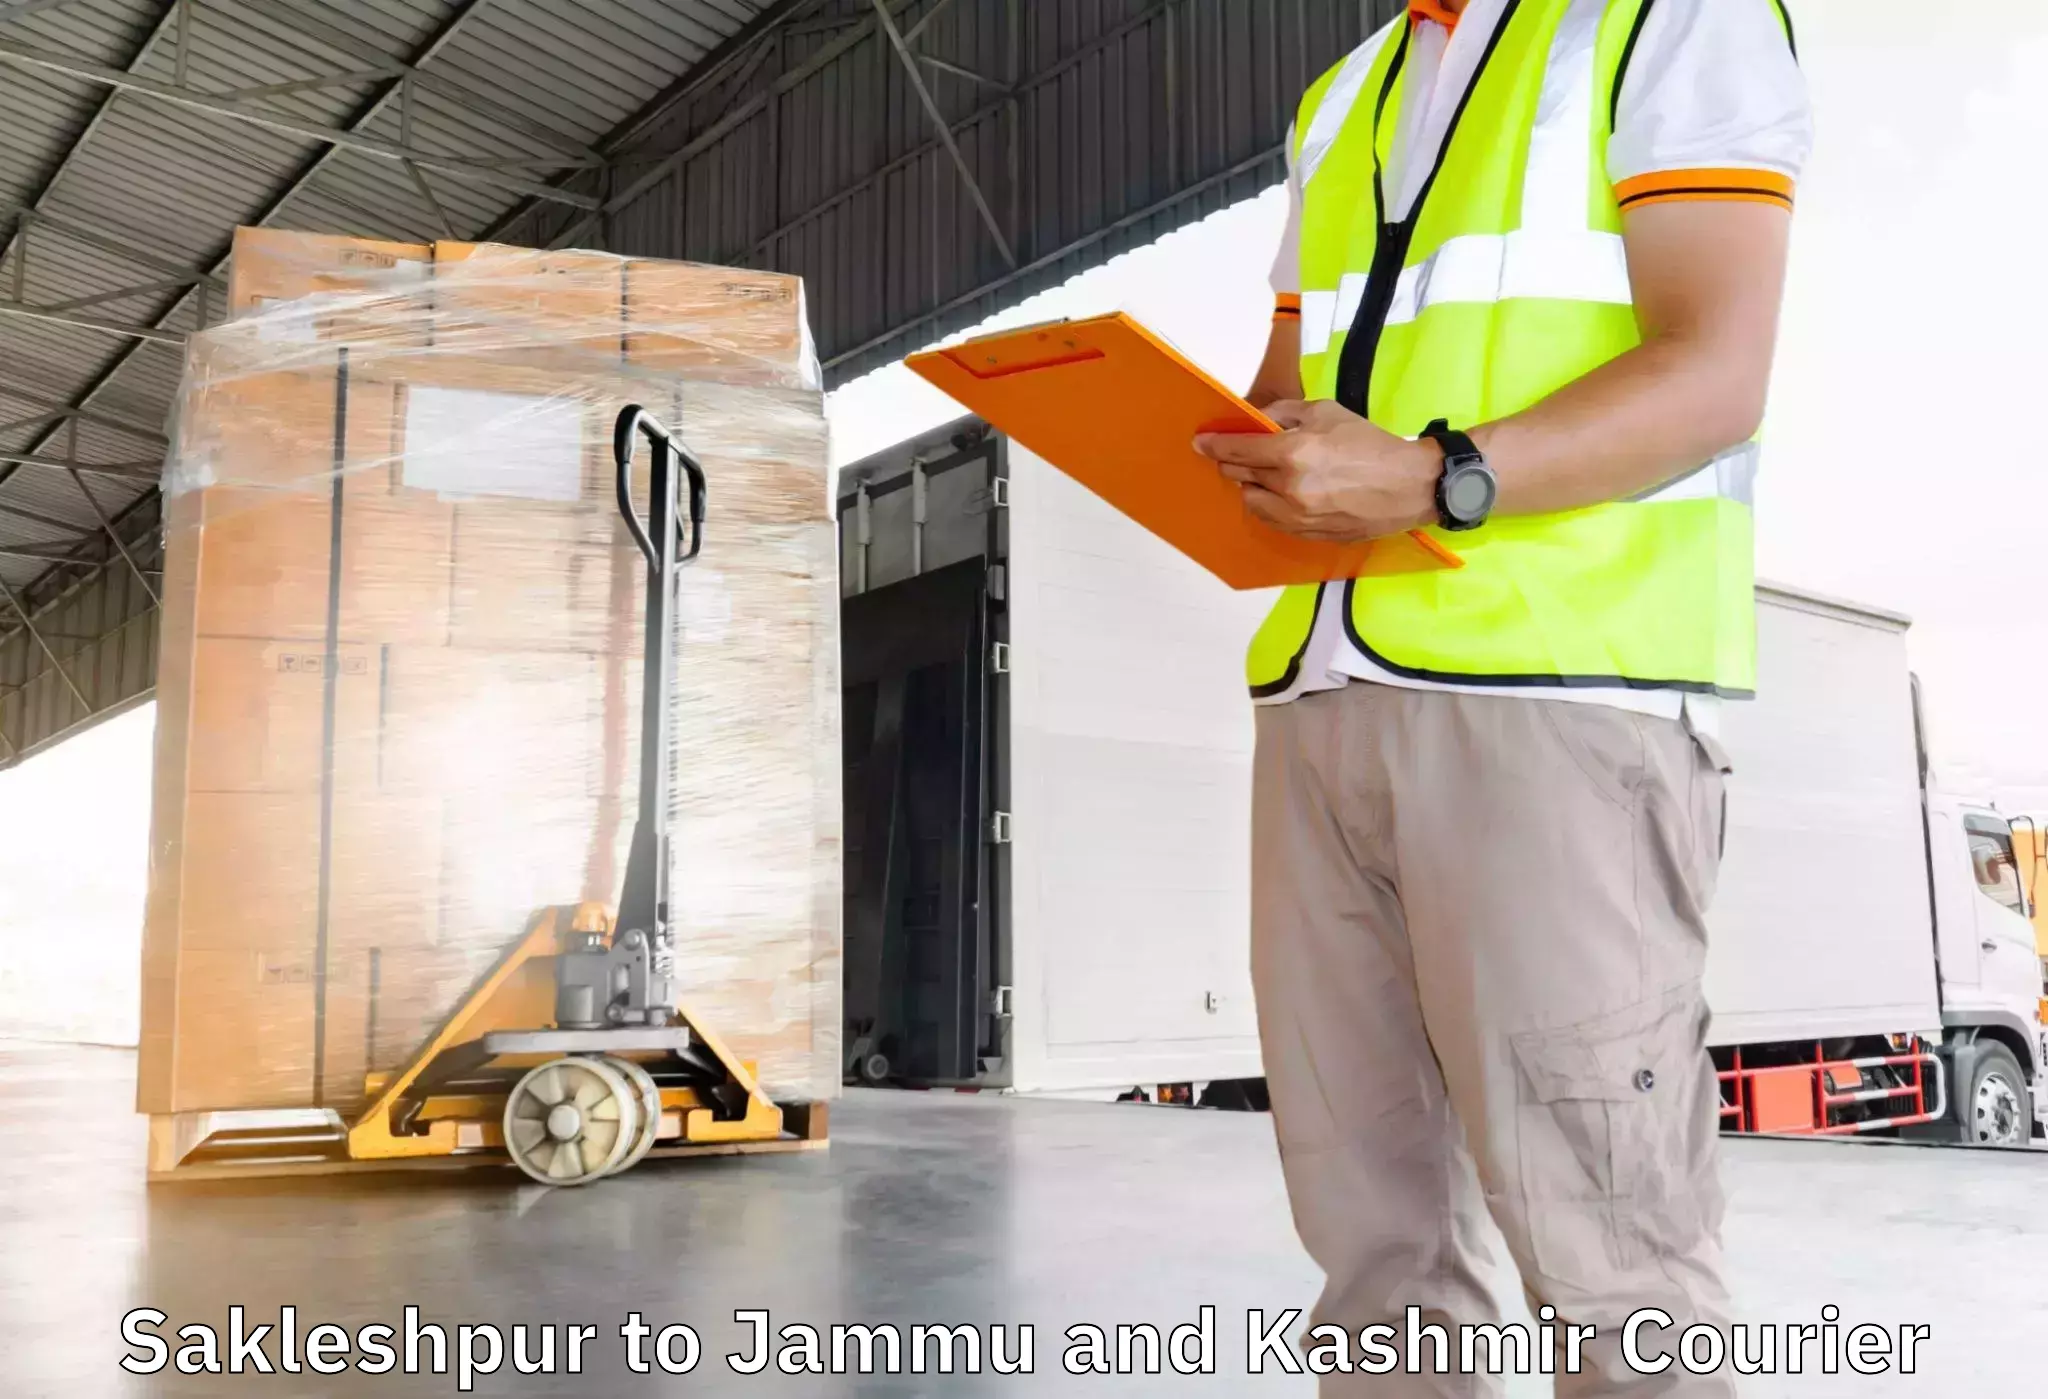 Furniture transport service Sakleshpur to Poonch